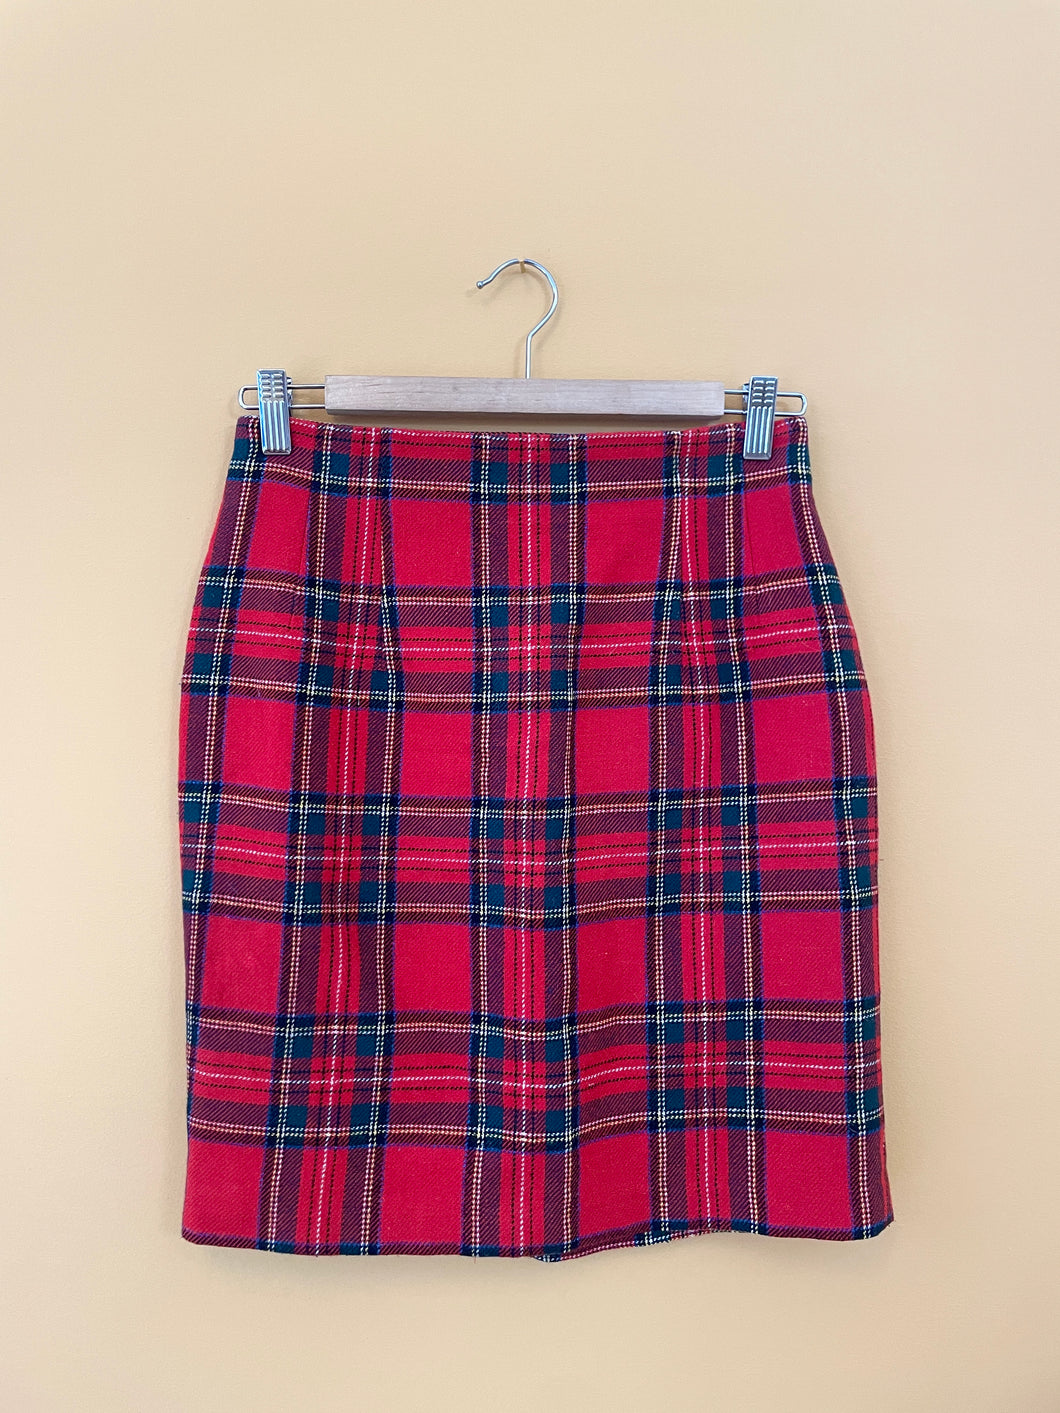 Tartan Plaid Vintage Mini Skirt S